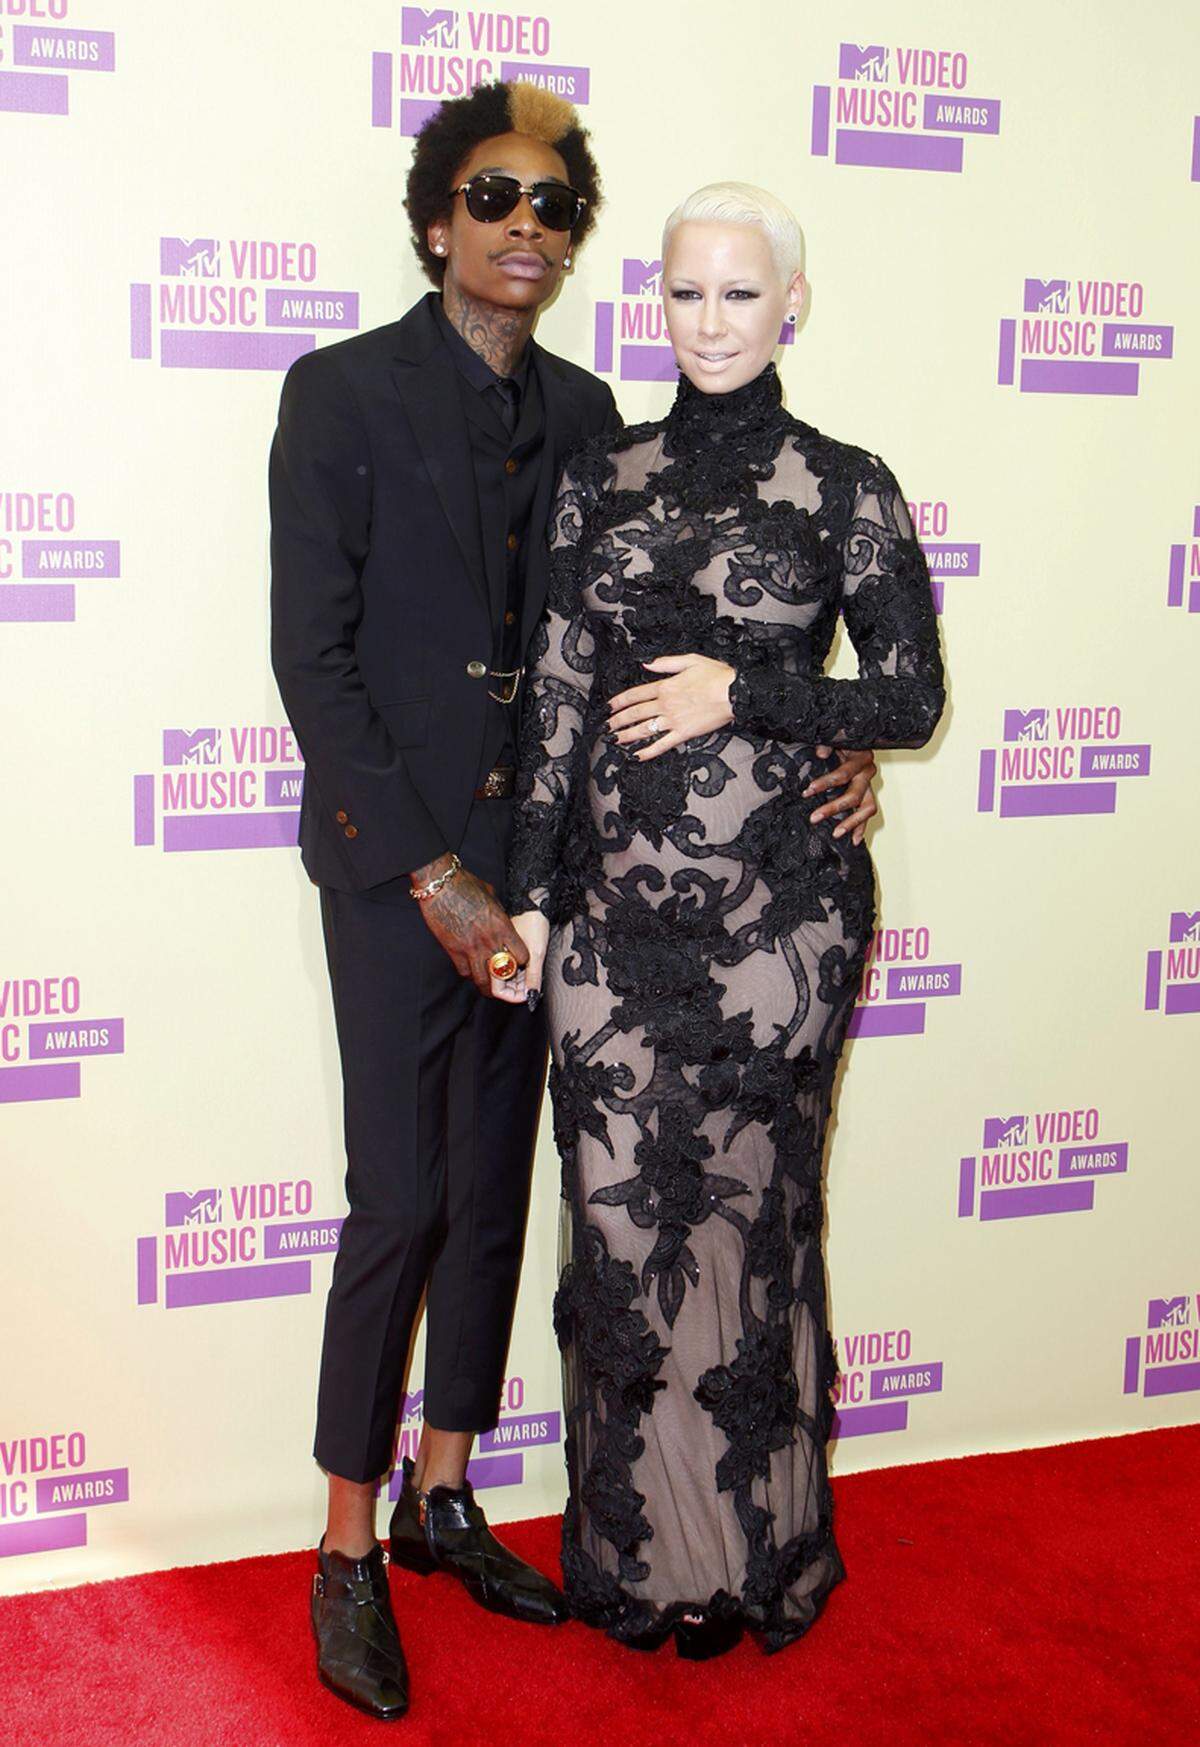 Ihren Babybauch präsentierte Amber Rose an der Seite ihres Verlobten, Rapper Wiz Khalifa, in einem schwarzen bestickten Kleid.